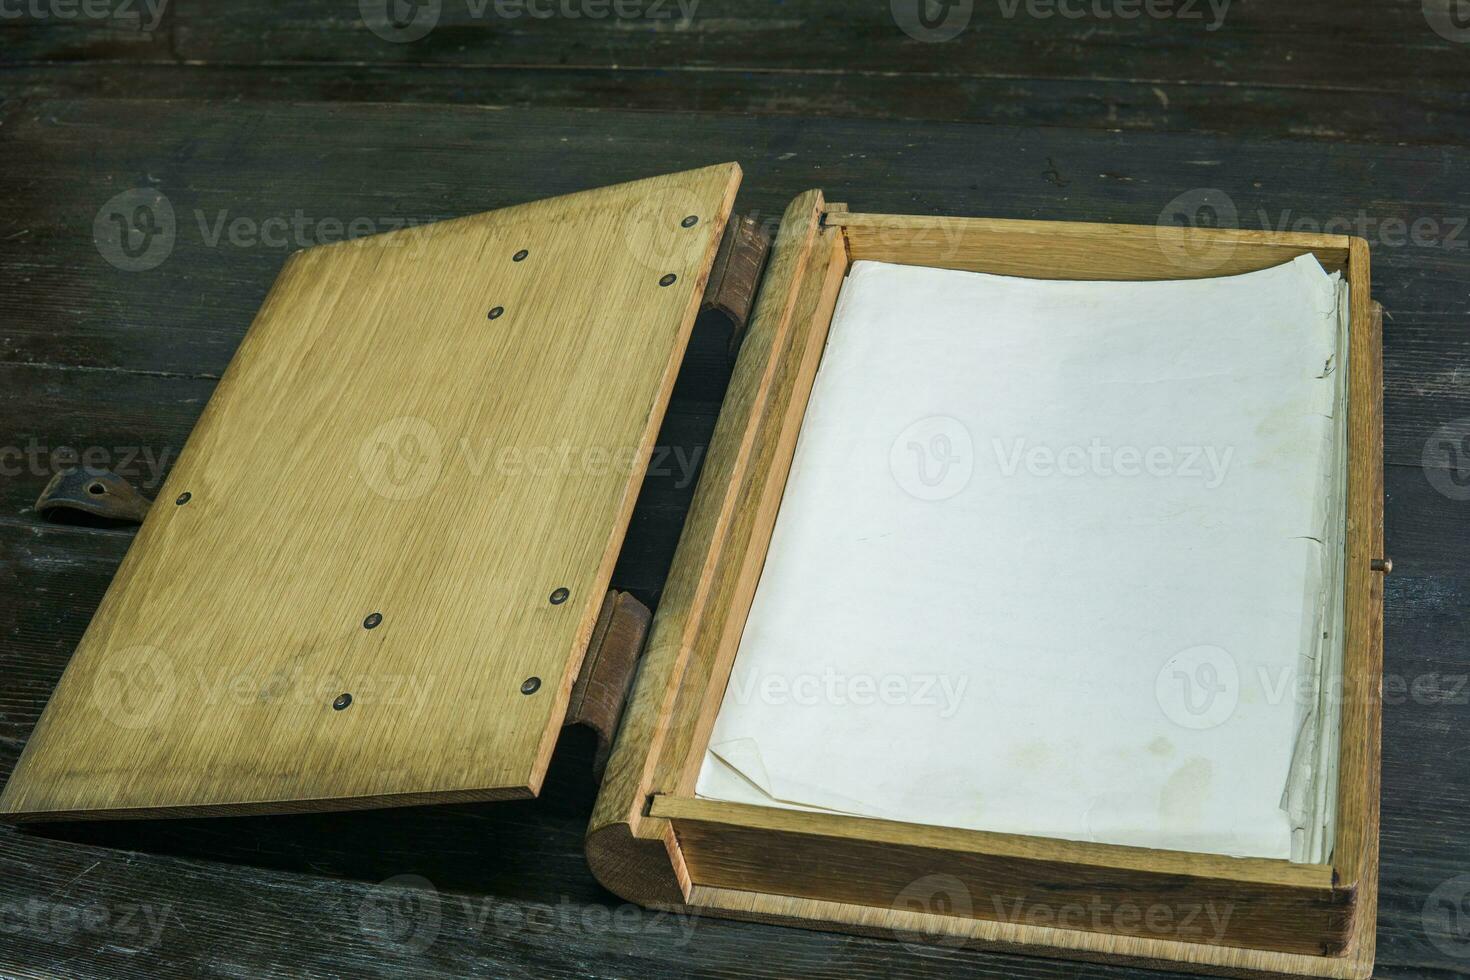 velho registro livro dentro uma de madeira caso com fechos em uma Preto mesa, aberto foto